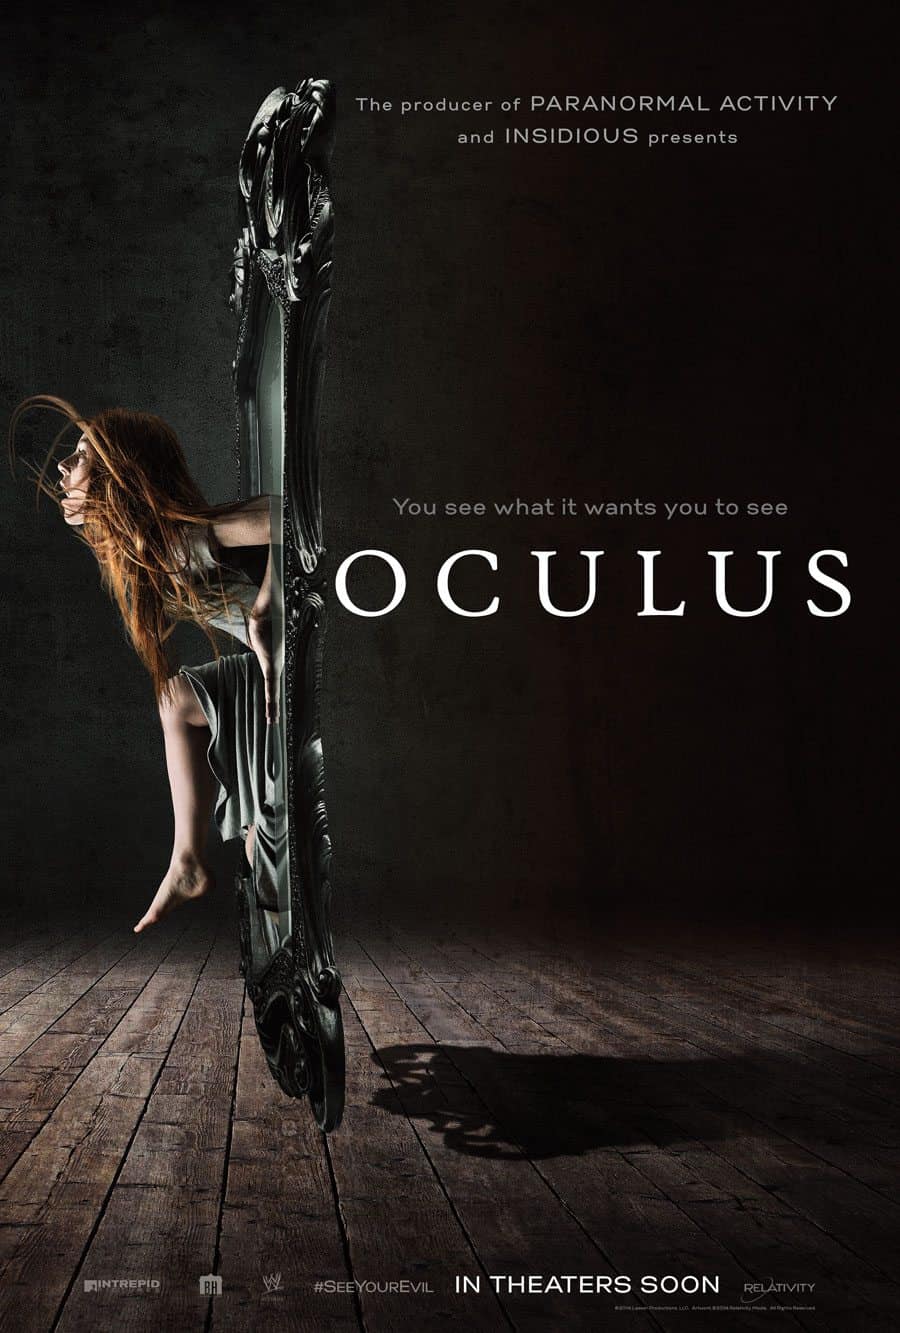 Oculus (2013) ★★★★☆